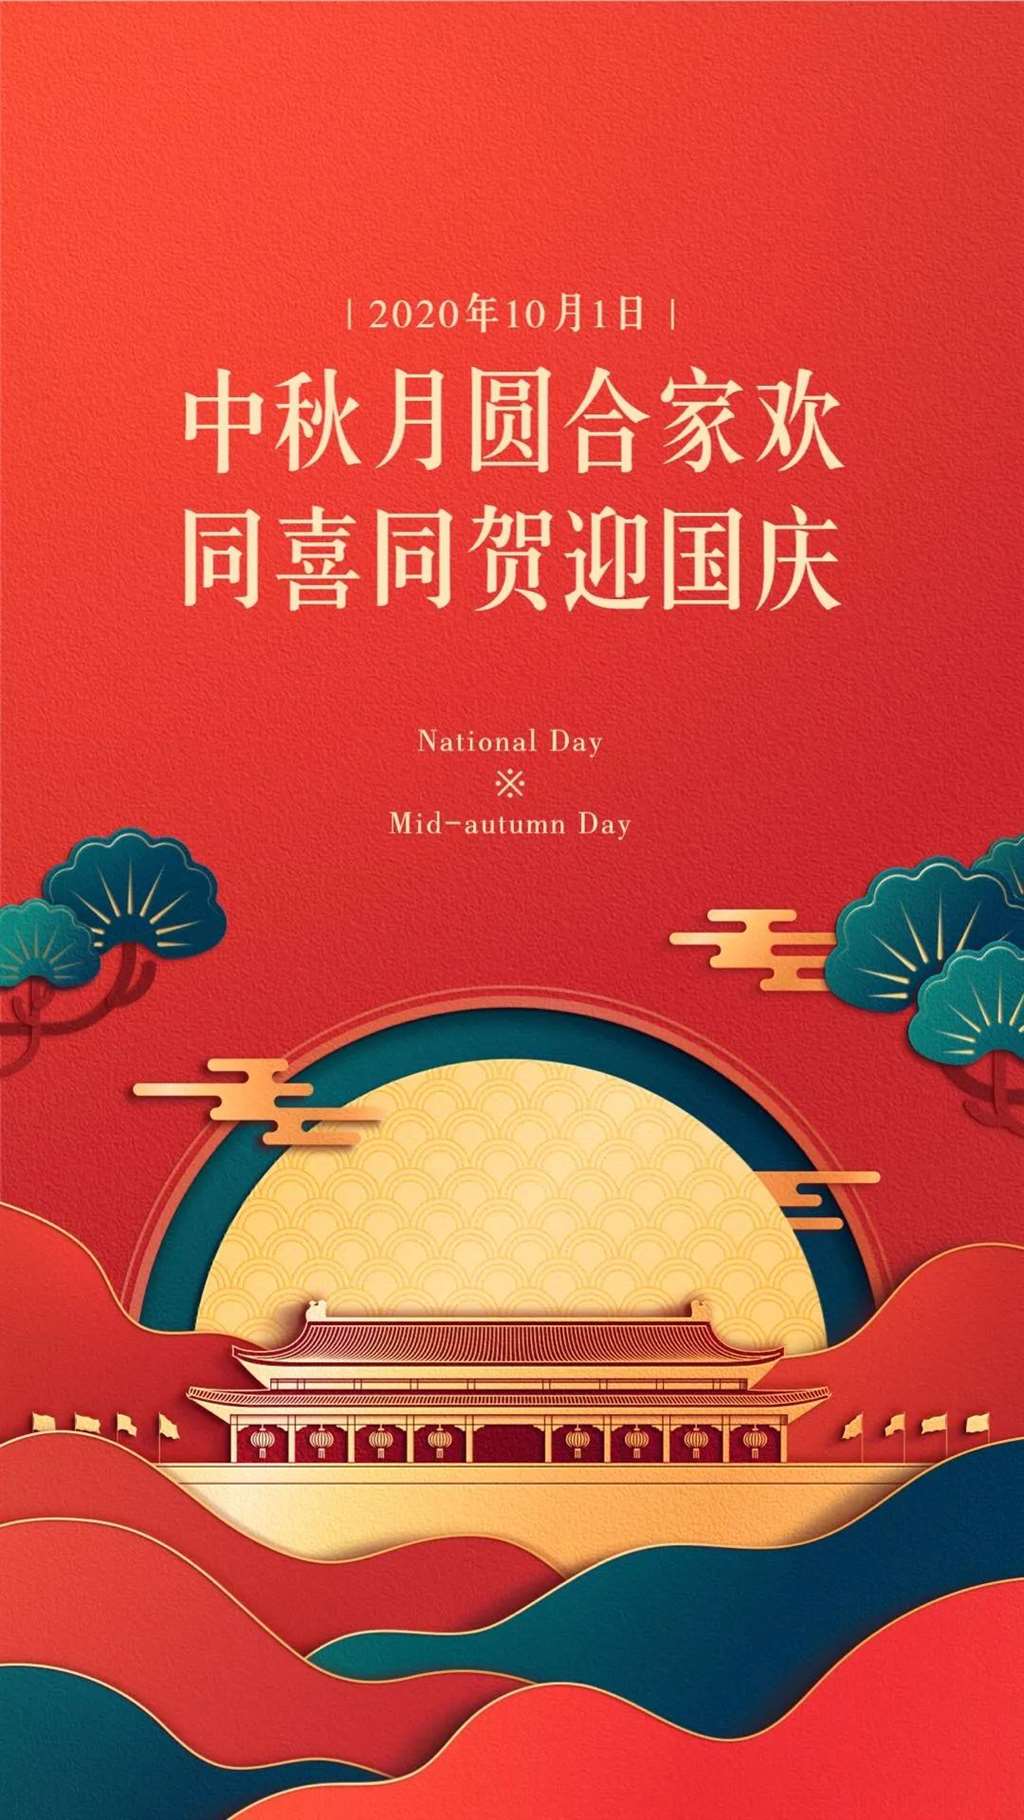 中秋 国庆双节的创意文案海报鉴赏